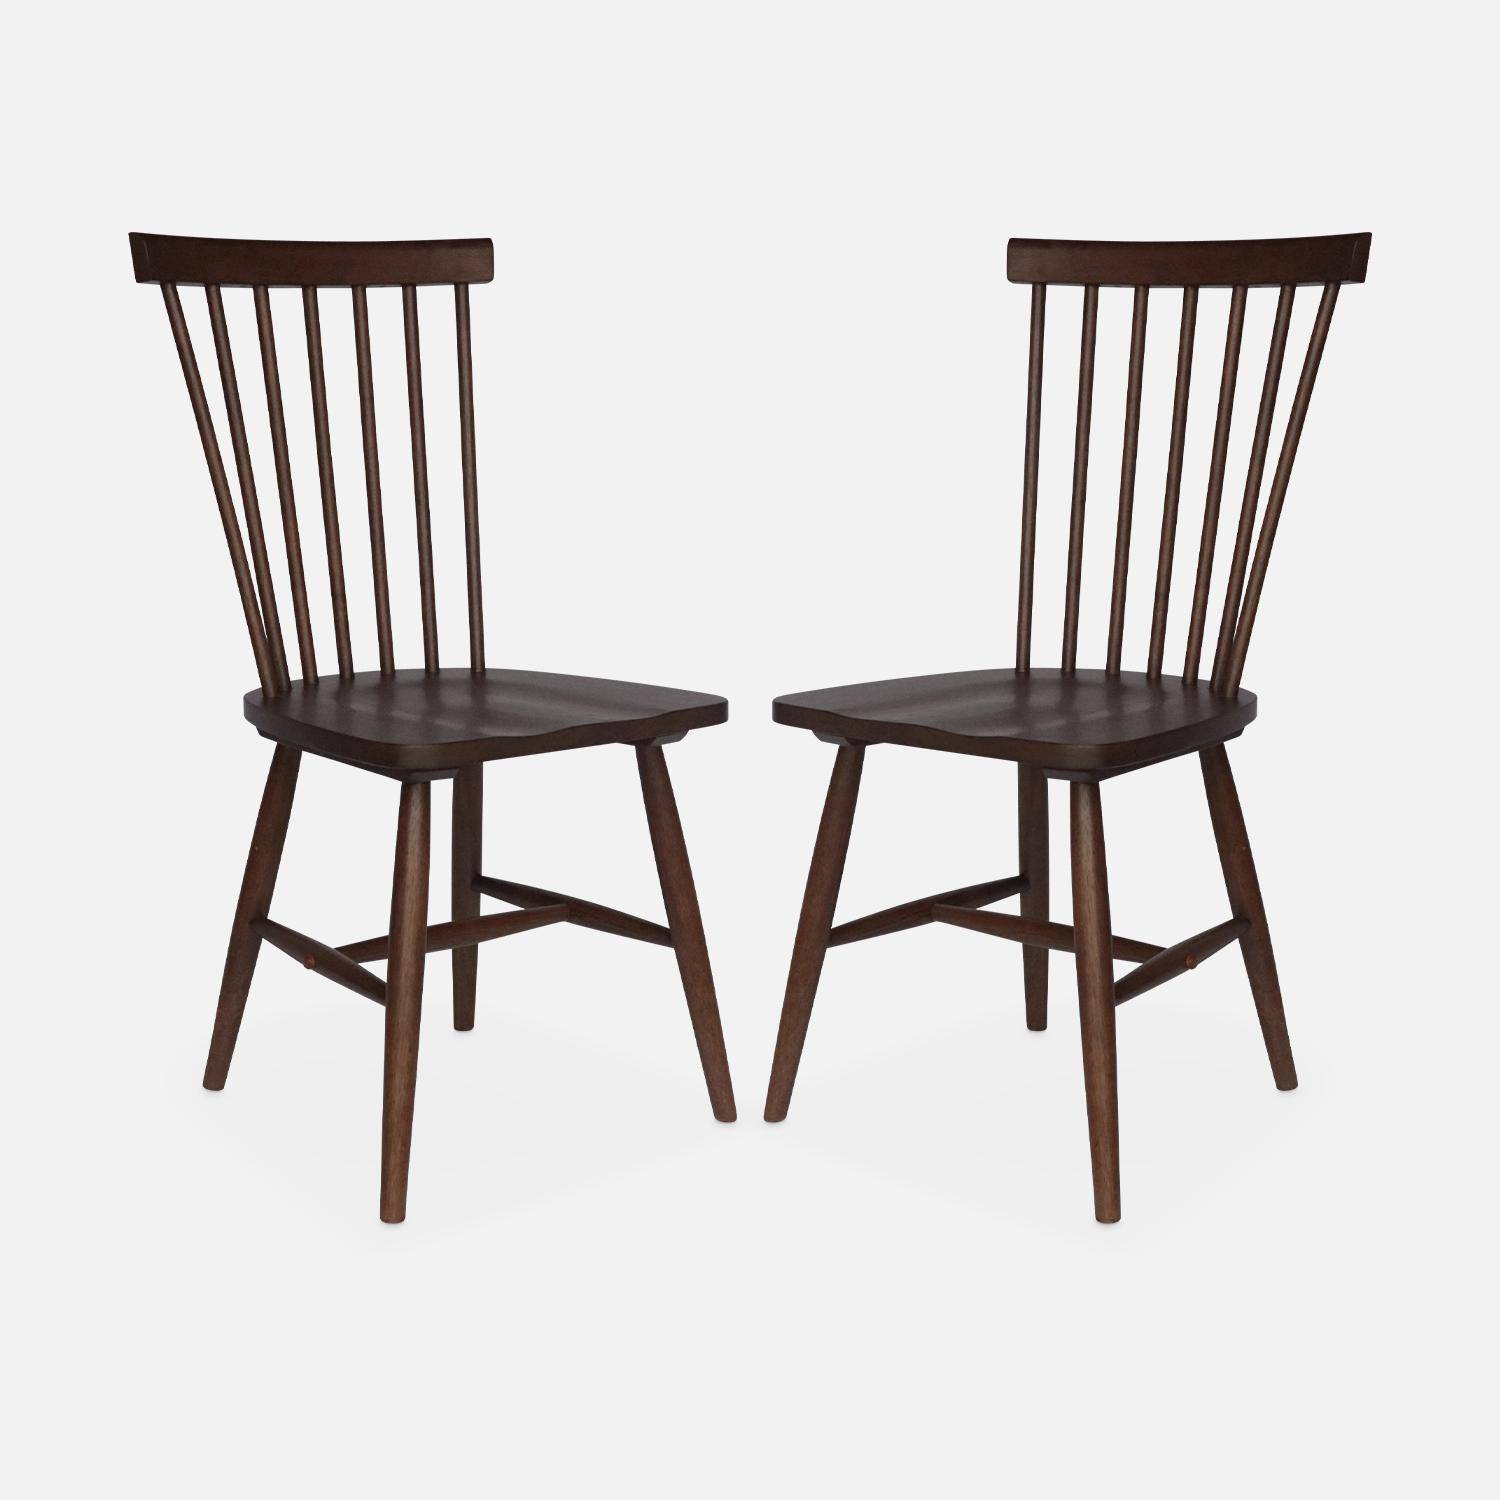 Conjunto de 2 cadeiras de nogueira com ripas de madeira de borracha, ROMIE, L 50,8 x P 44,2 x A 90cm.,sweeek,Photo5